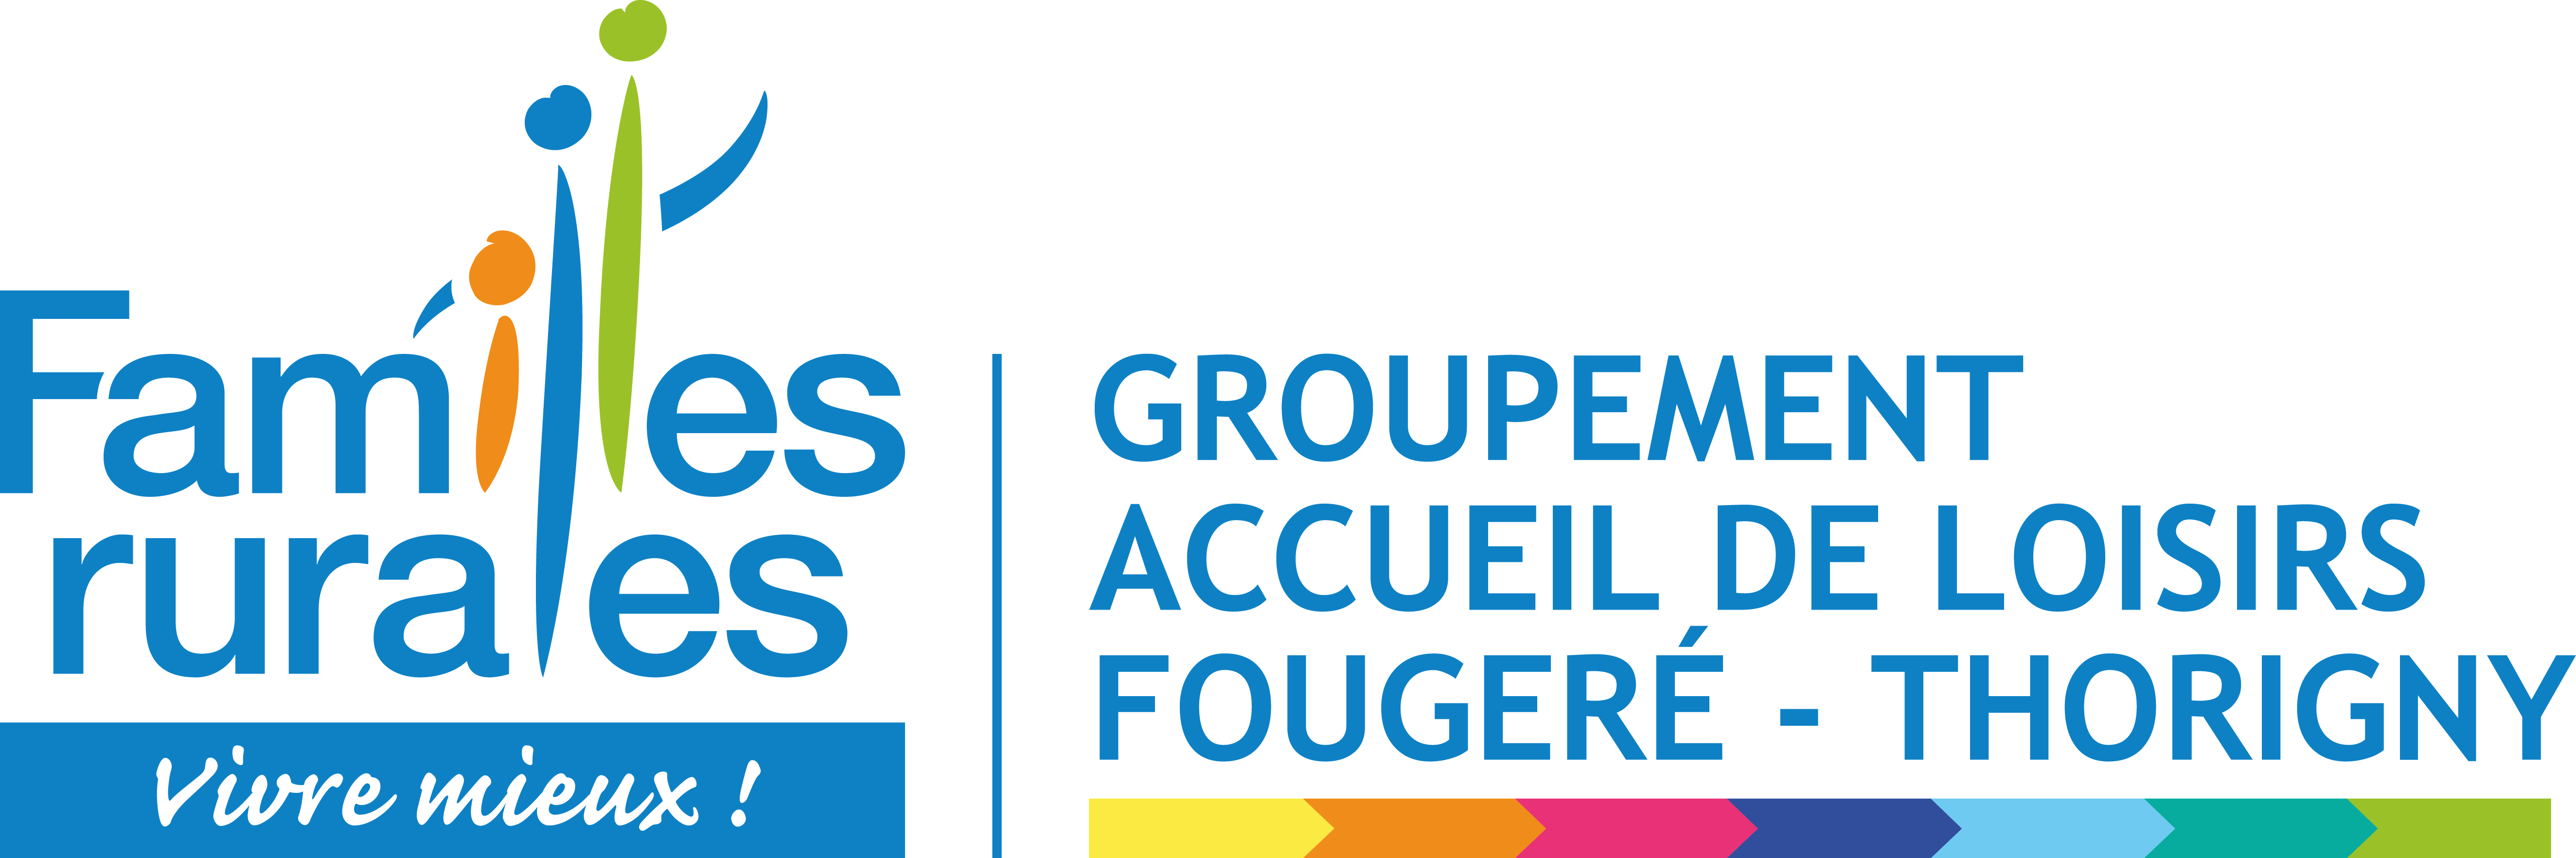 Logo Groupement Accueil Loisirs Fougeré Thorigny